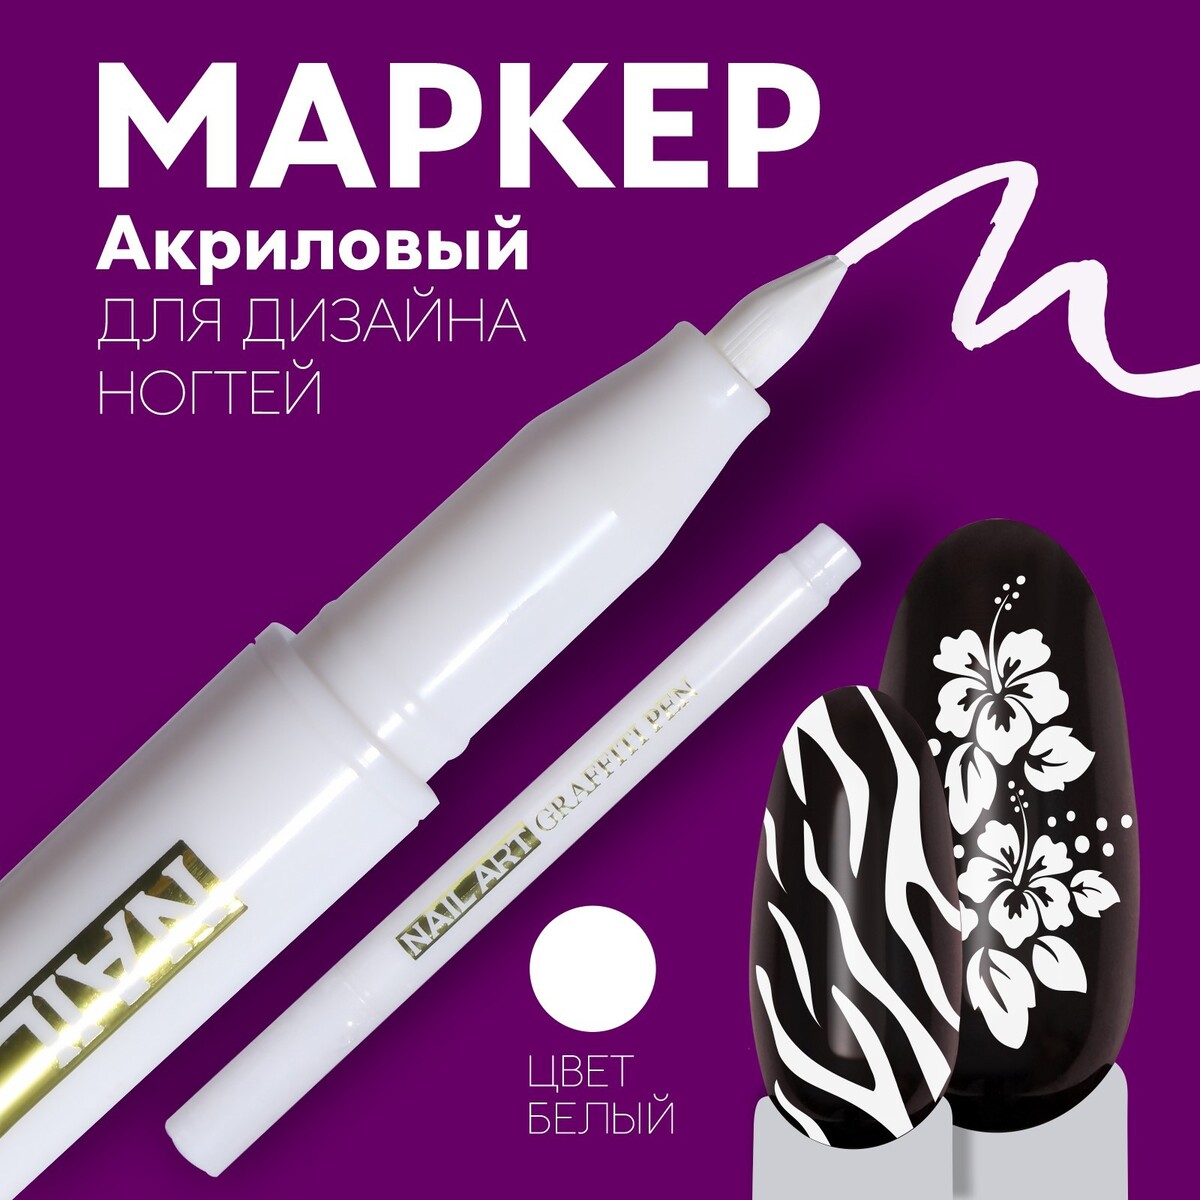 Маркер для дизайна ногтей, акриловый, 13,5 см, цвет белый ручка маркер для разметки по коже белый